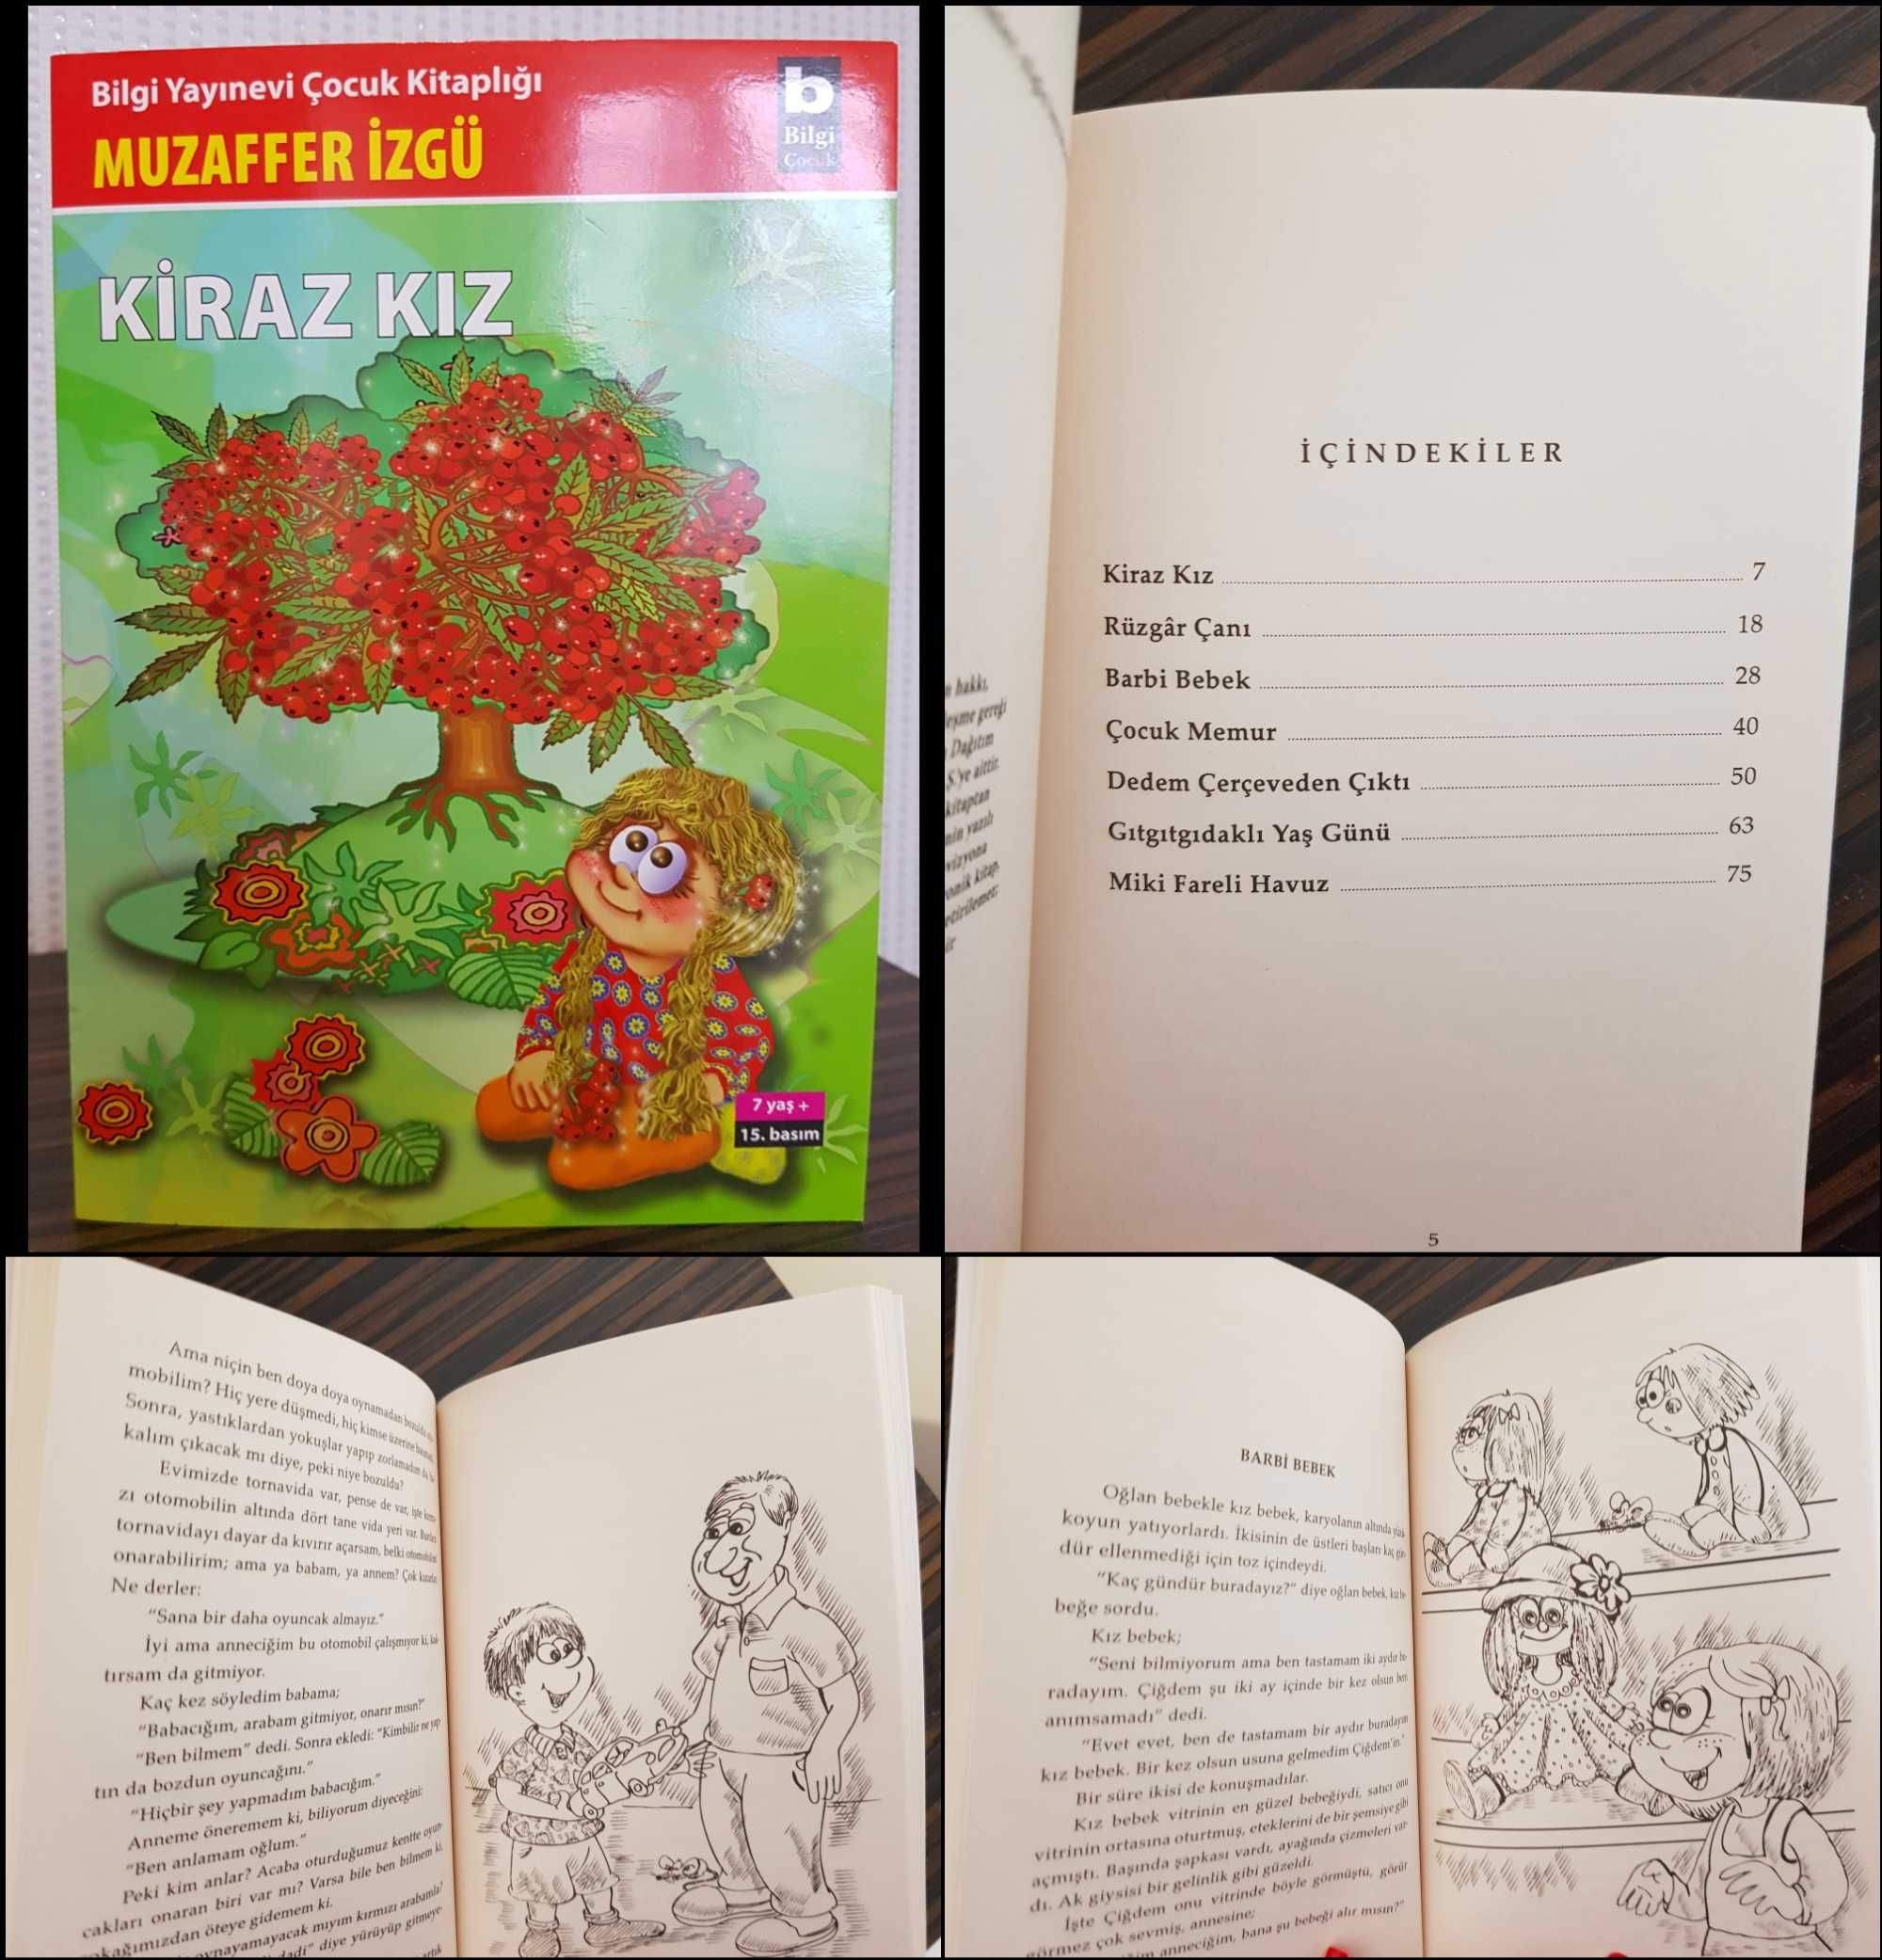 Дитячі книги турецькою мовою, турецькі казки (Türkçe çocuk kitapları)